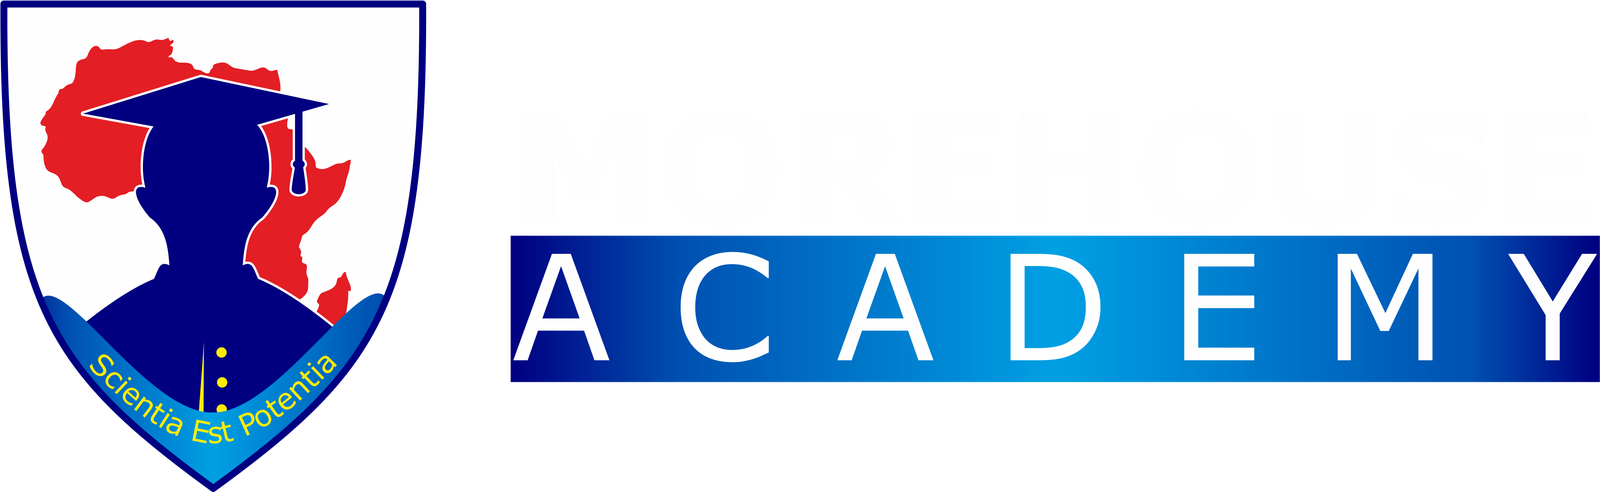 MoreHouse Academy Logo